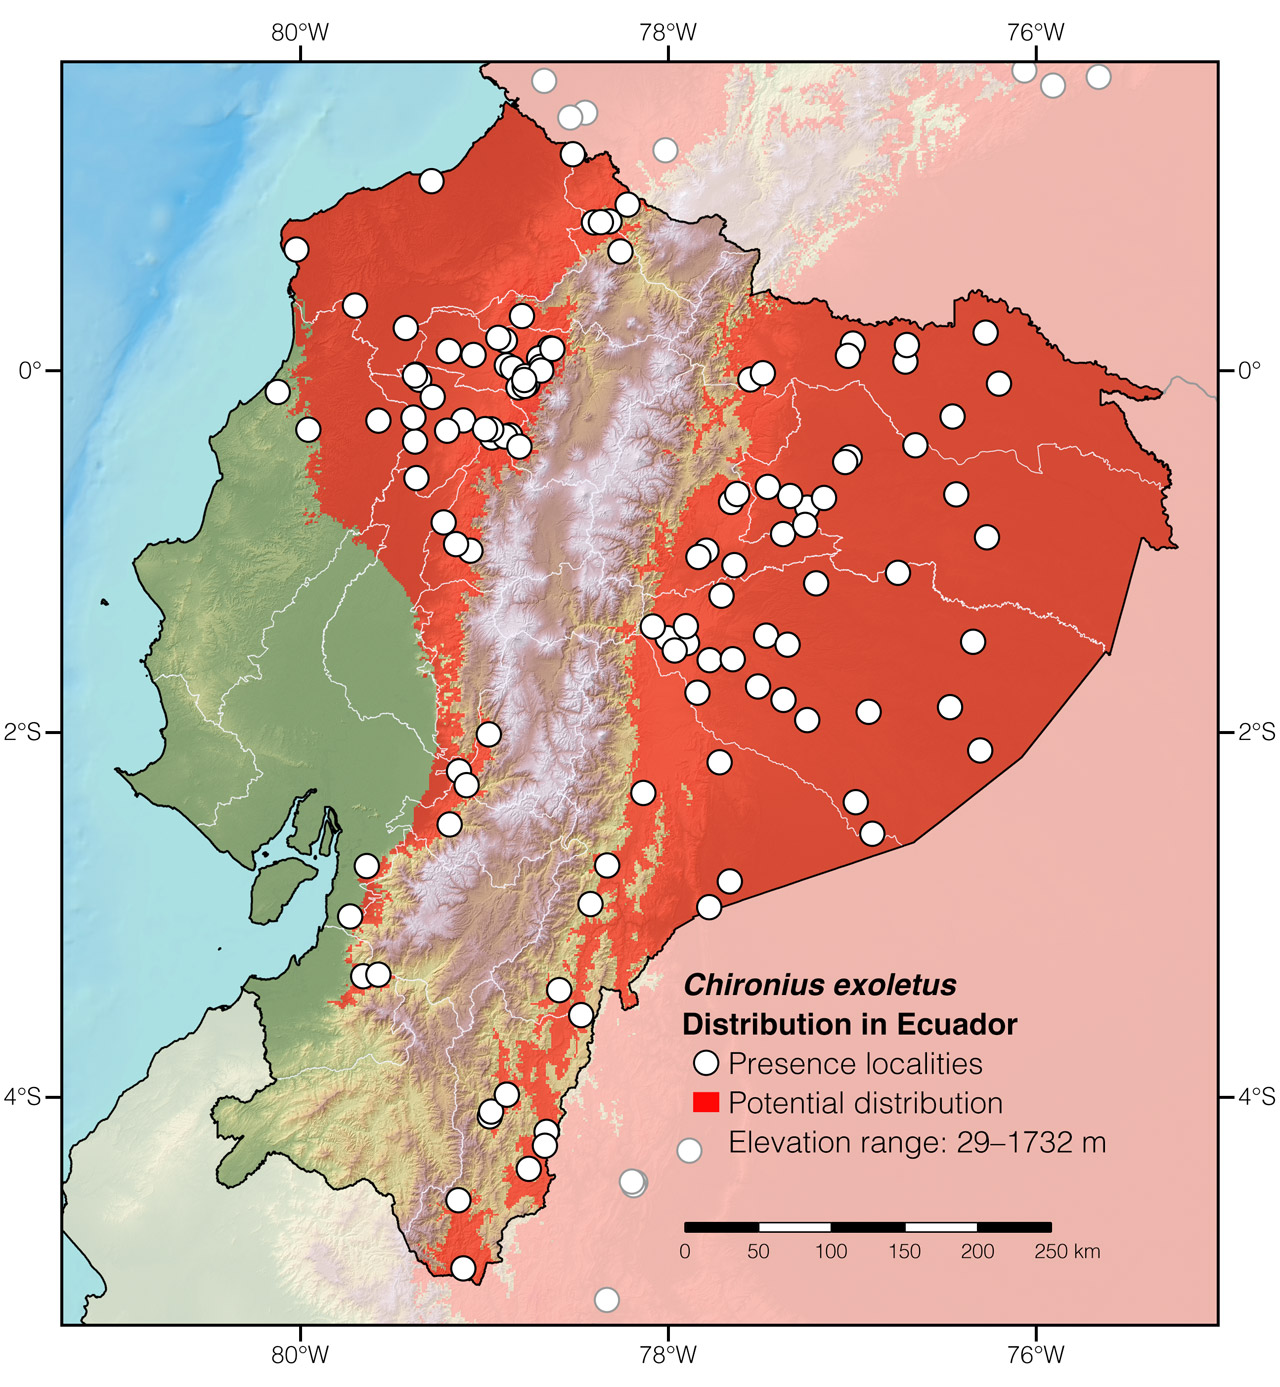 Distribution of Chironius exoletus in Ecuador